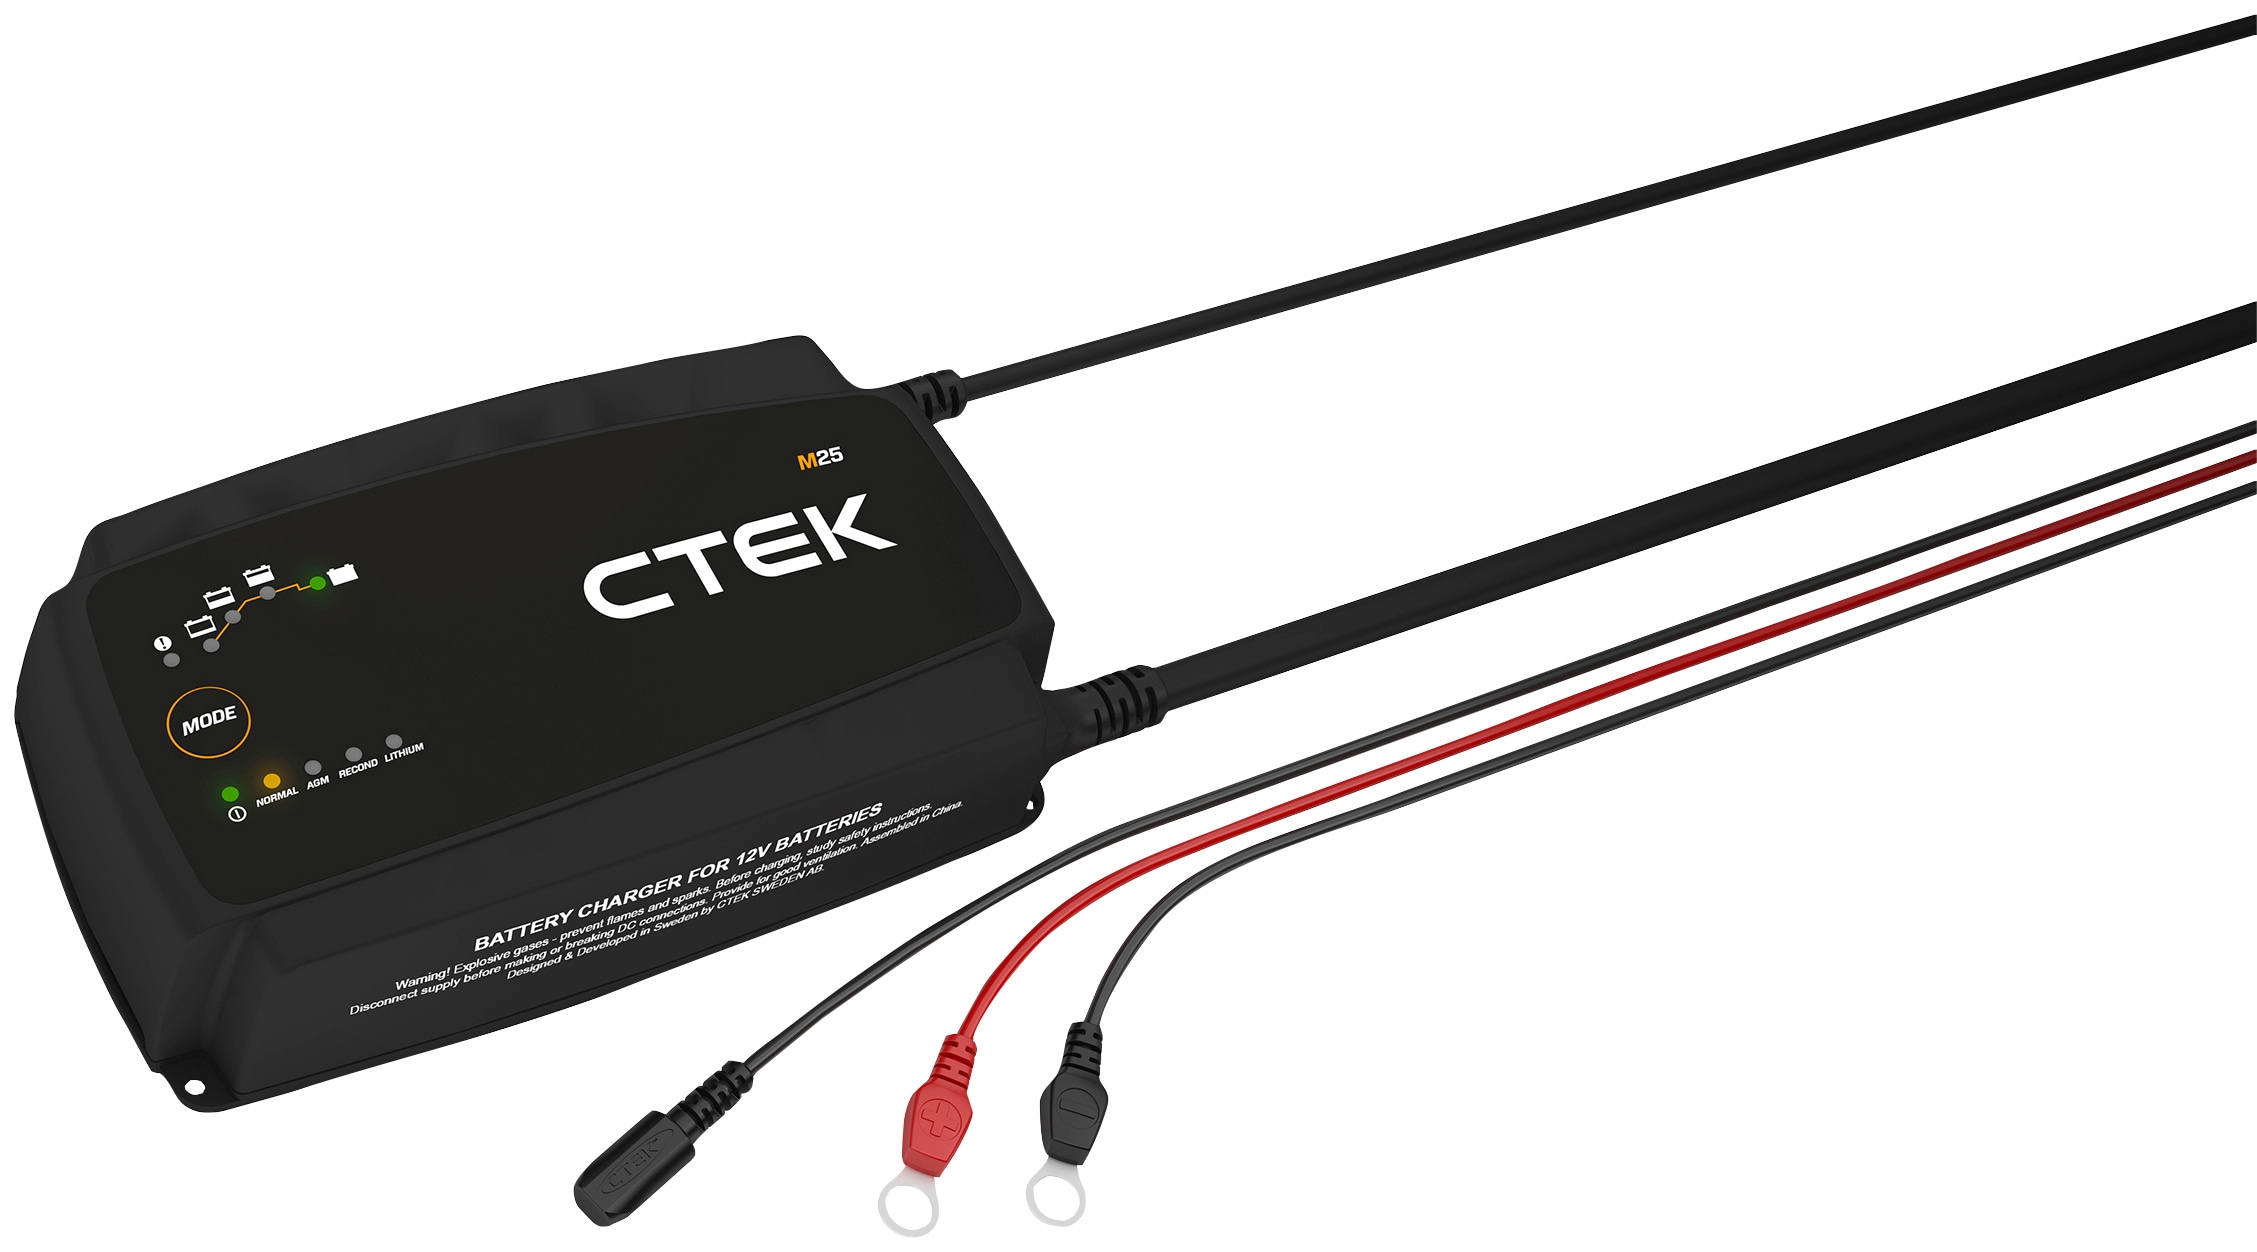 CTEK Batterie-Ladegerät »M25«, Vollautomatisch und einfach zu bedienen